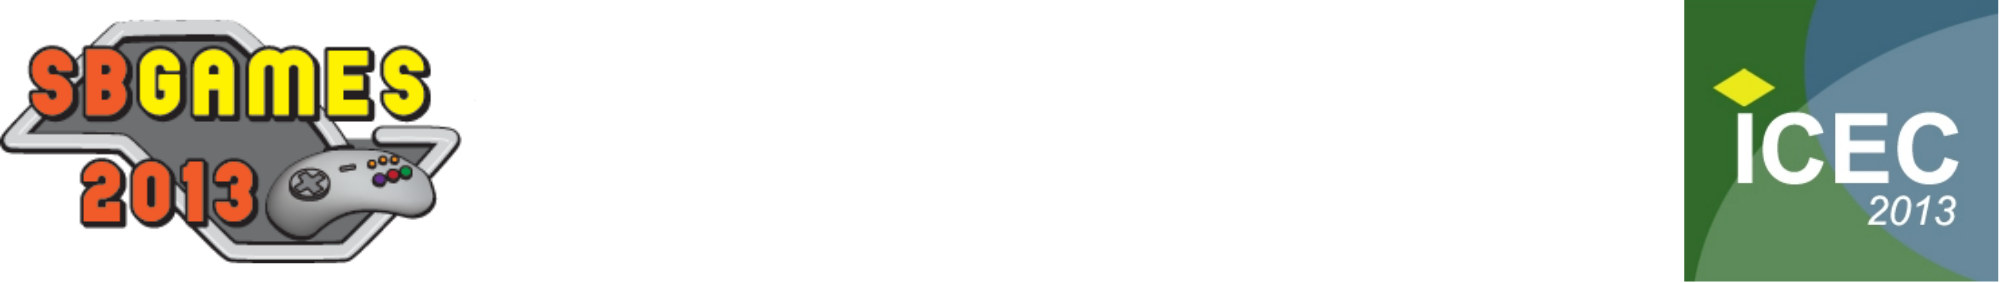 Blog Posts - ABRAGAMES - ASSOCIAÇÃO BRASILEIRA DAS EMPRESAS DESENVOLVEDORAS  DE JOGOS DIGITAIS